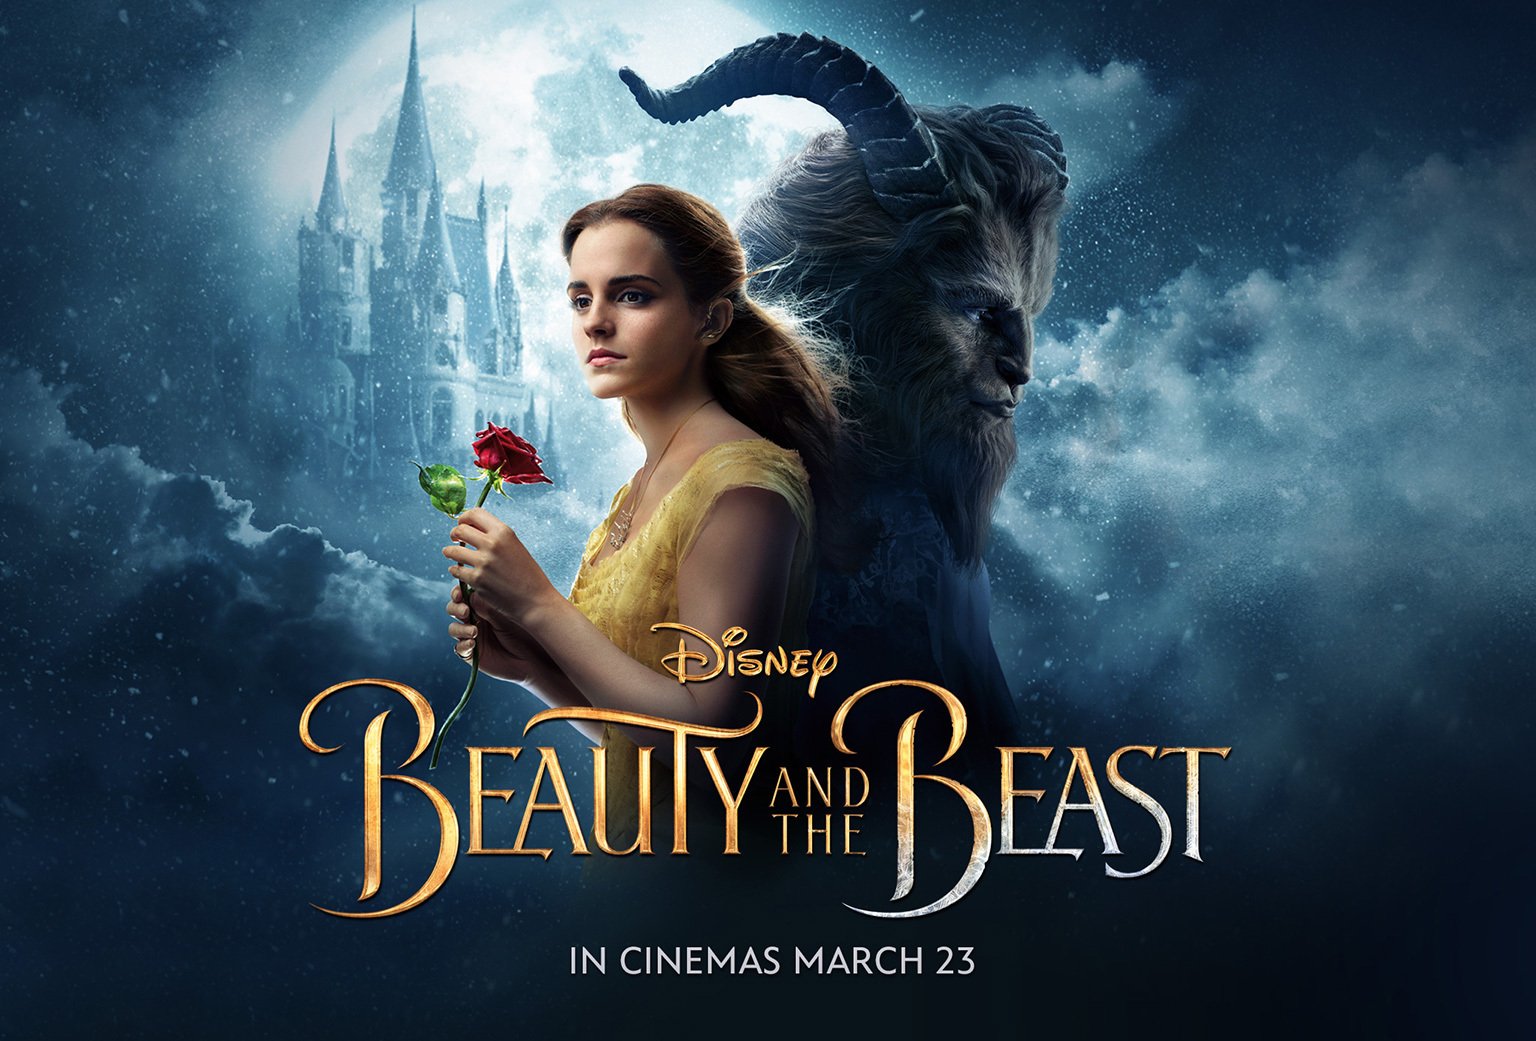 Novo trailer de “Beauty and the Beast” apresenta o dueto de Ariana Grande e John Legend